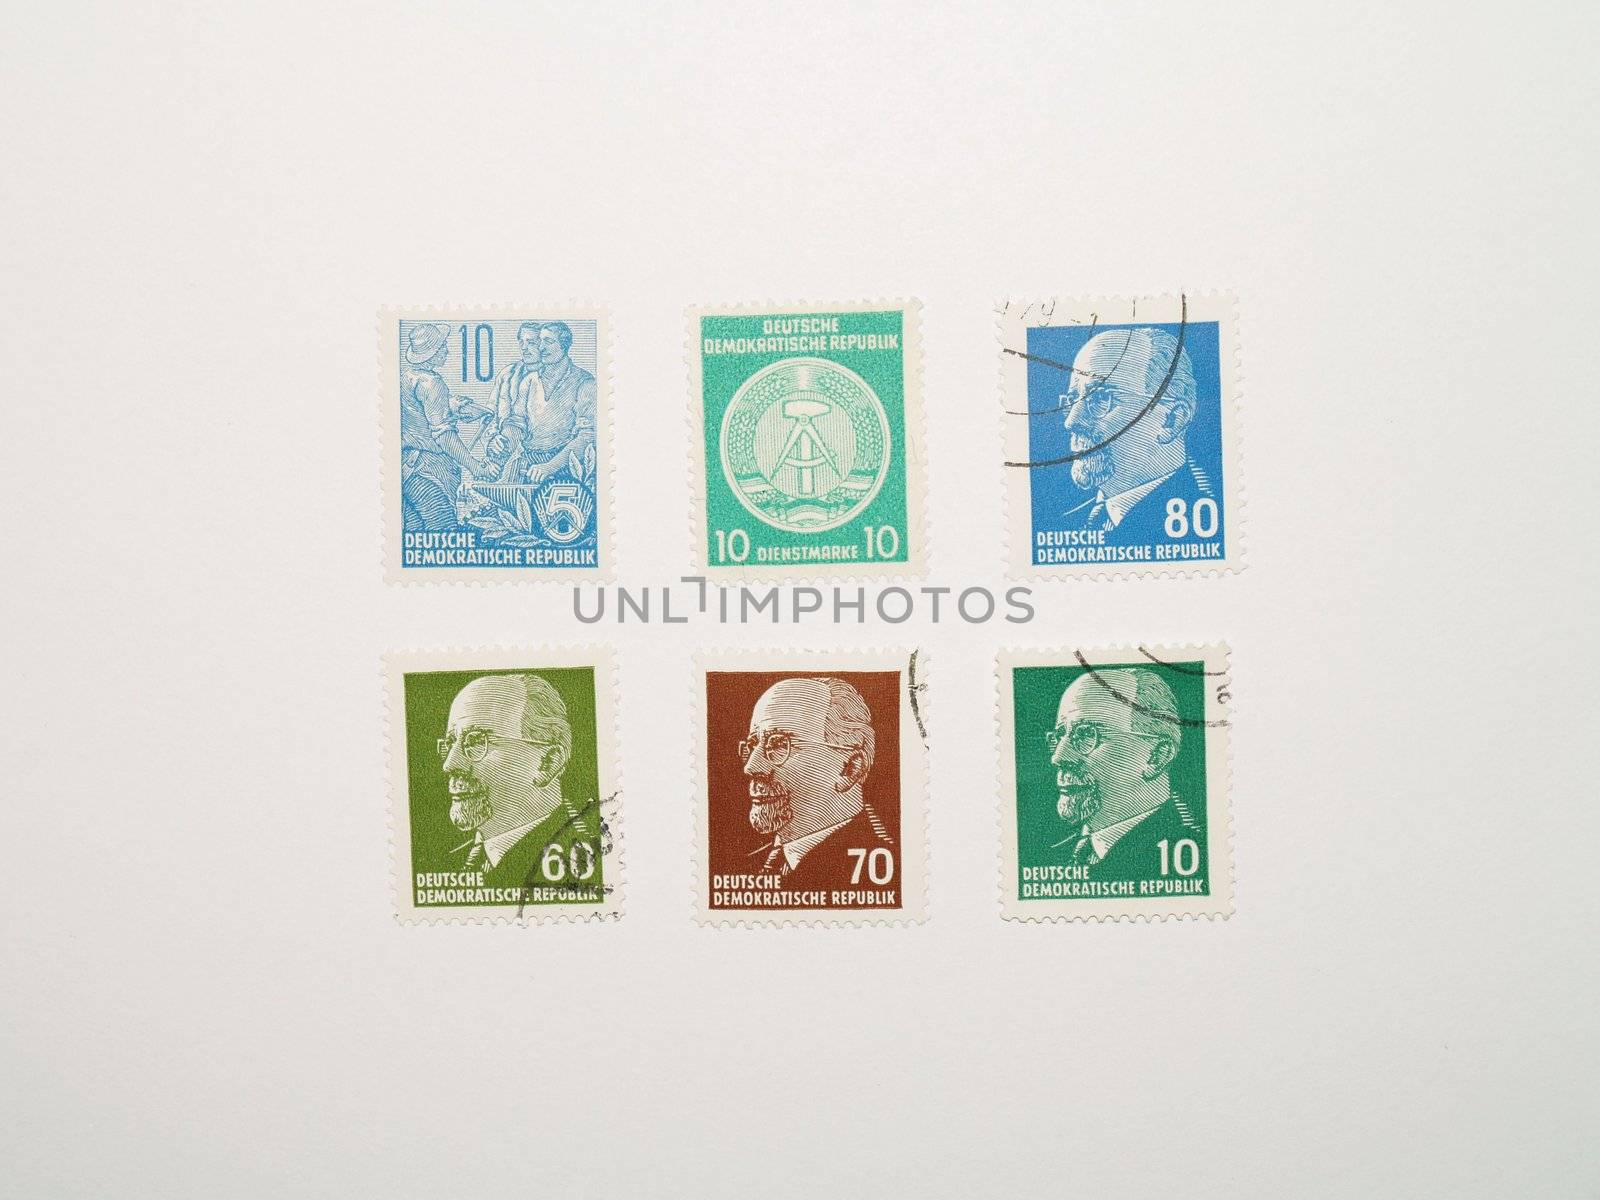 german stamps by viviolsen